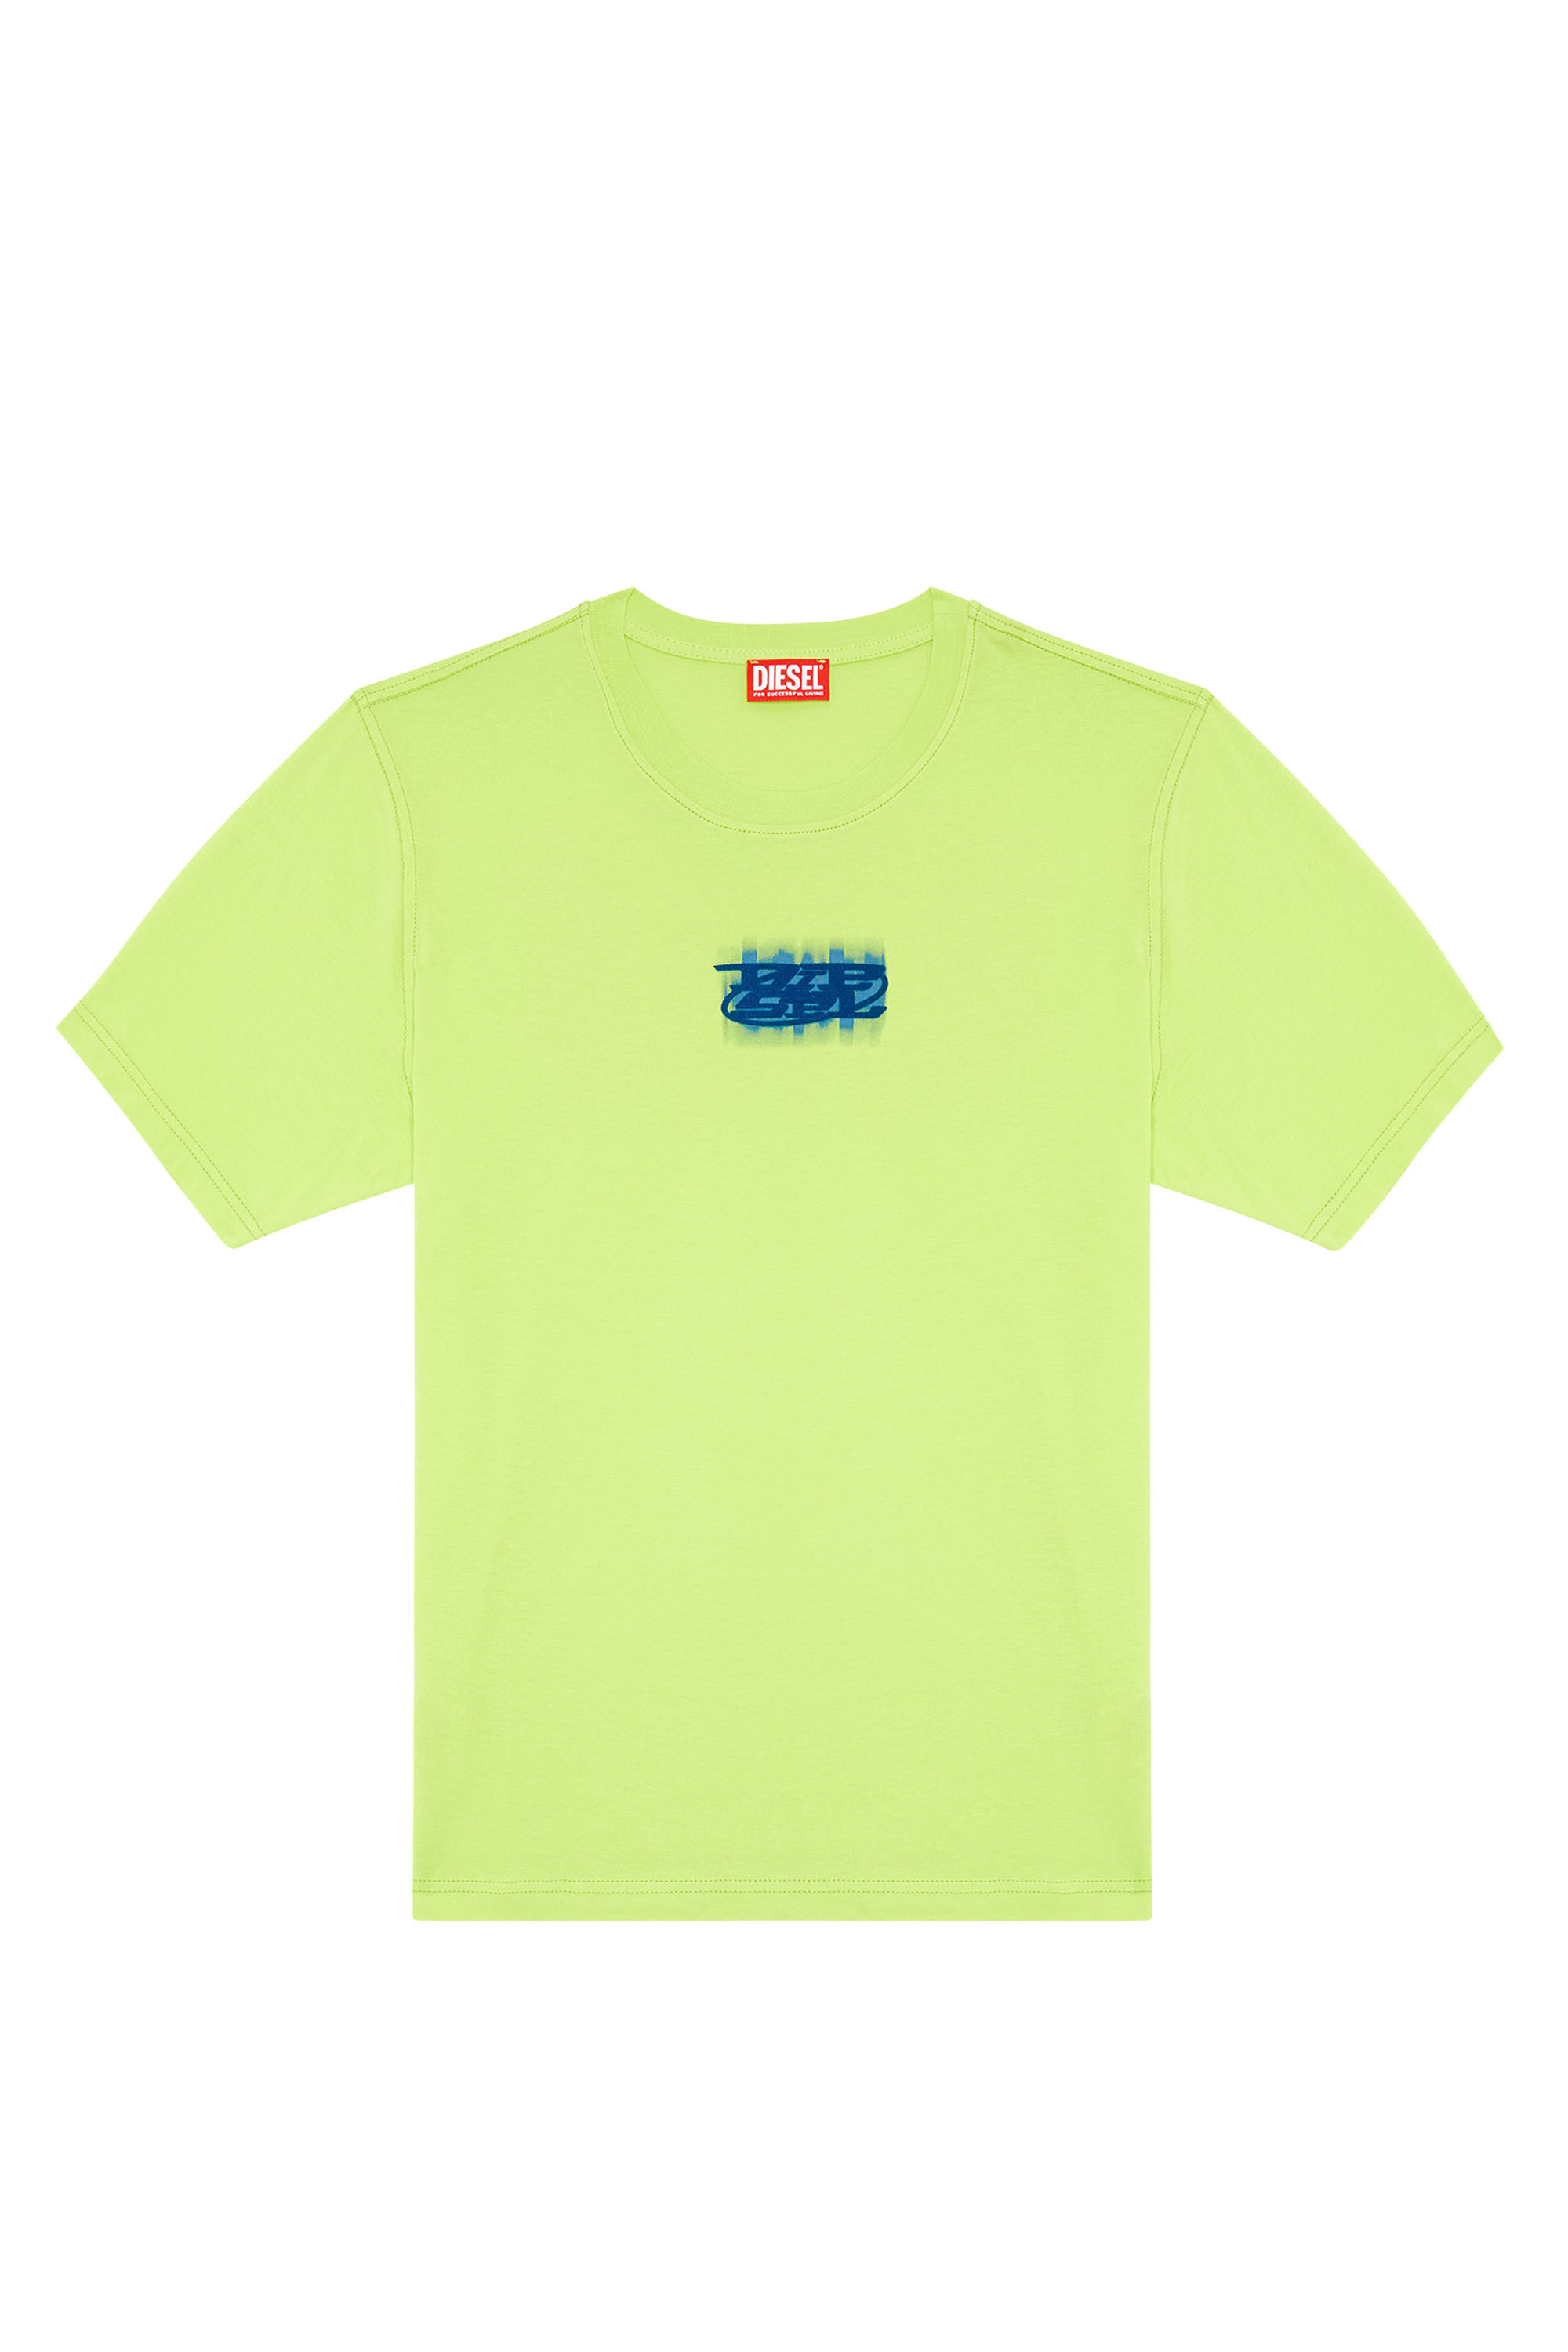 Diesel - T-JUST-N4, Homme T-shirt en coton bio avec logo floqué in Vert - Image 2